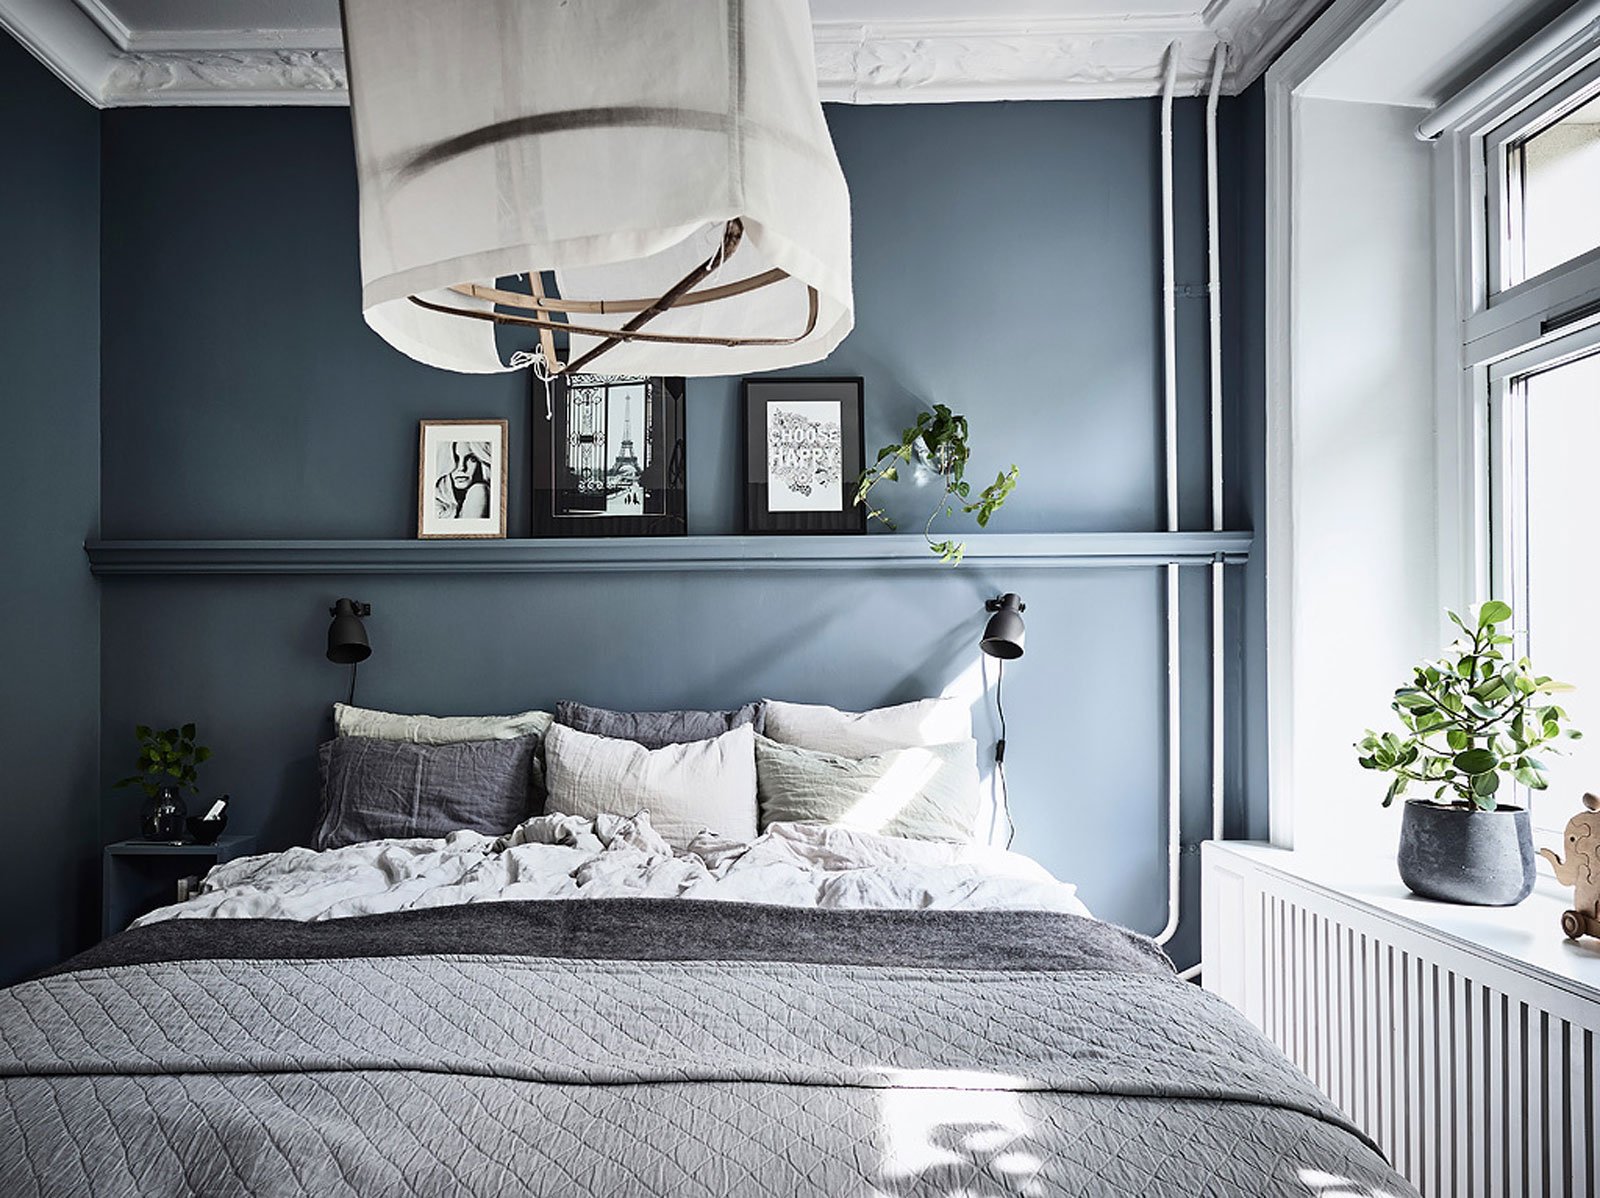 Camera da letto scandinava - sfumature di grigio